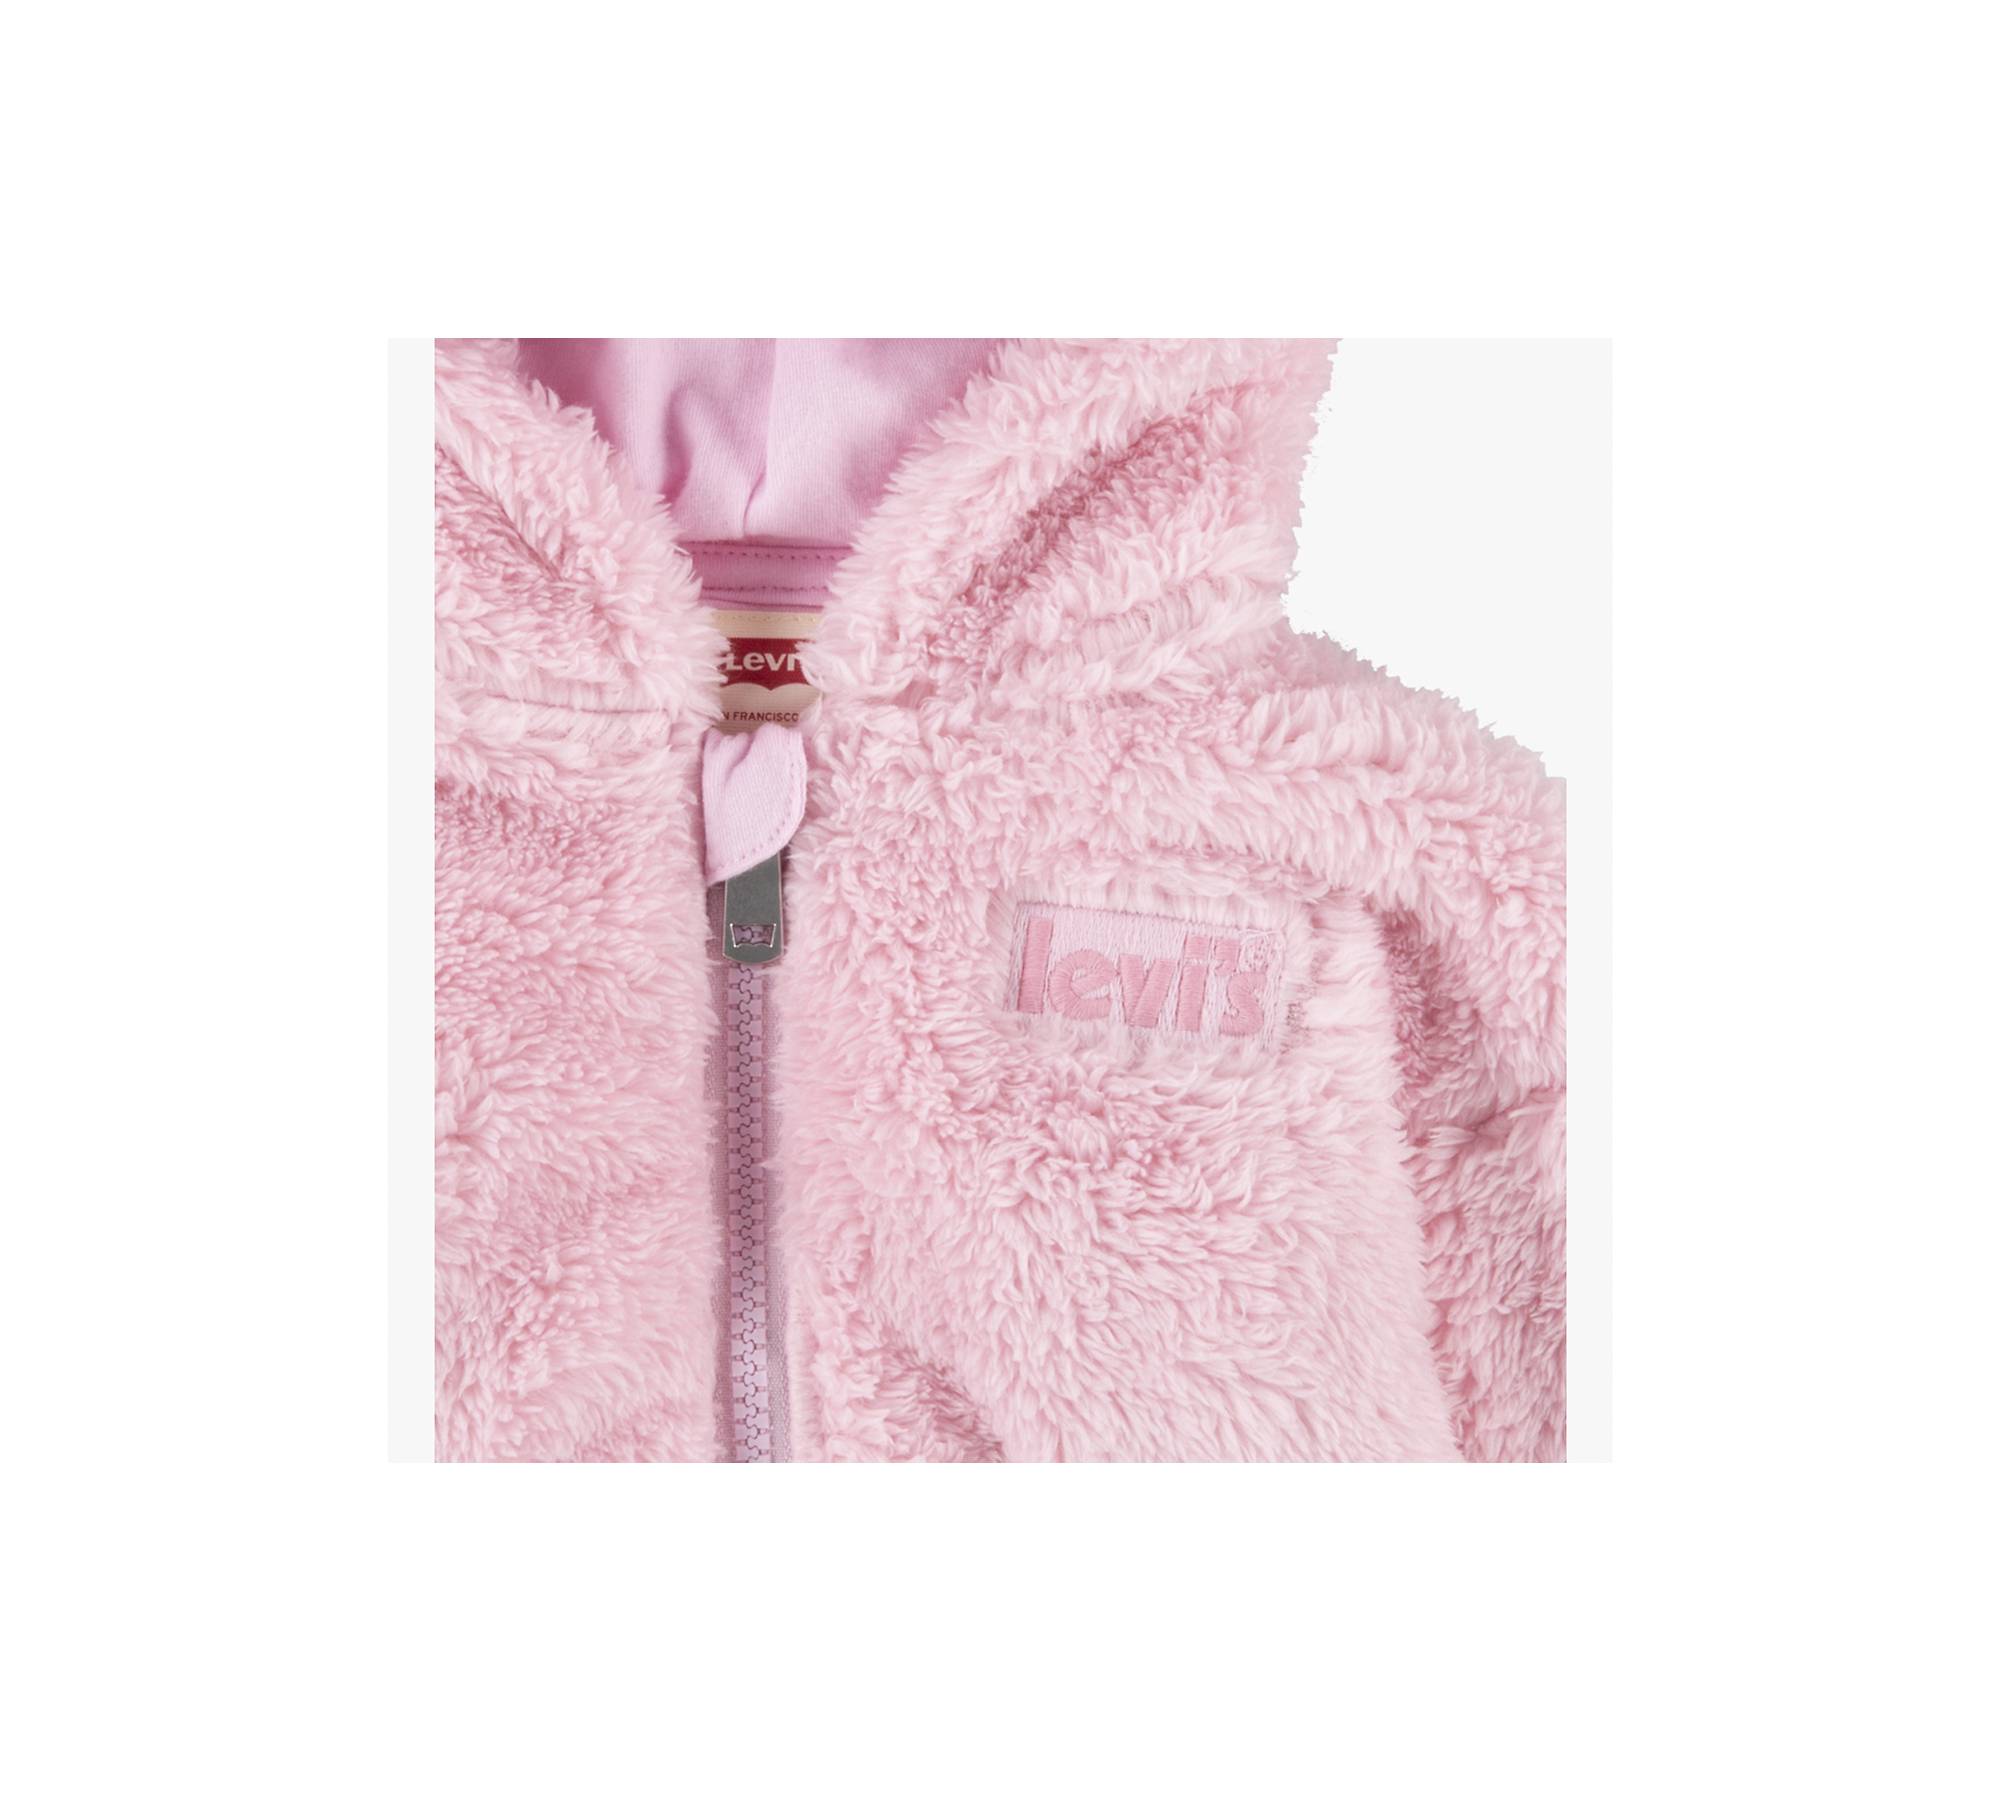  bmkBWO Women's Winter Hooded Adult One Piece Bear Faux Shearling  Pajamas Sherpa Sleepwear Cozy Loungewear Warm Romper Pink : Sports &  Outdoors